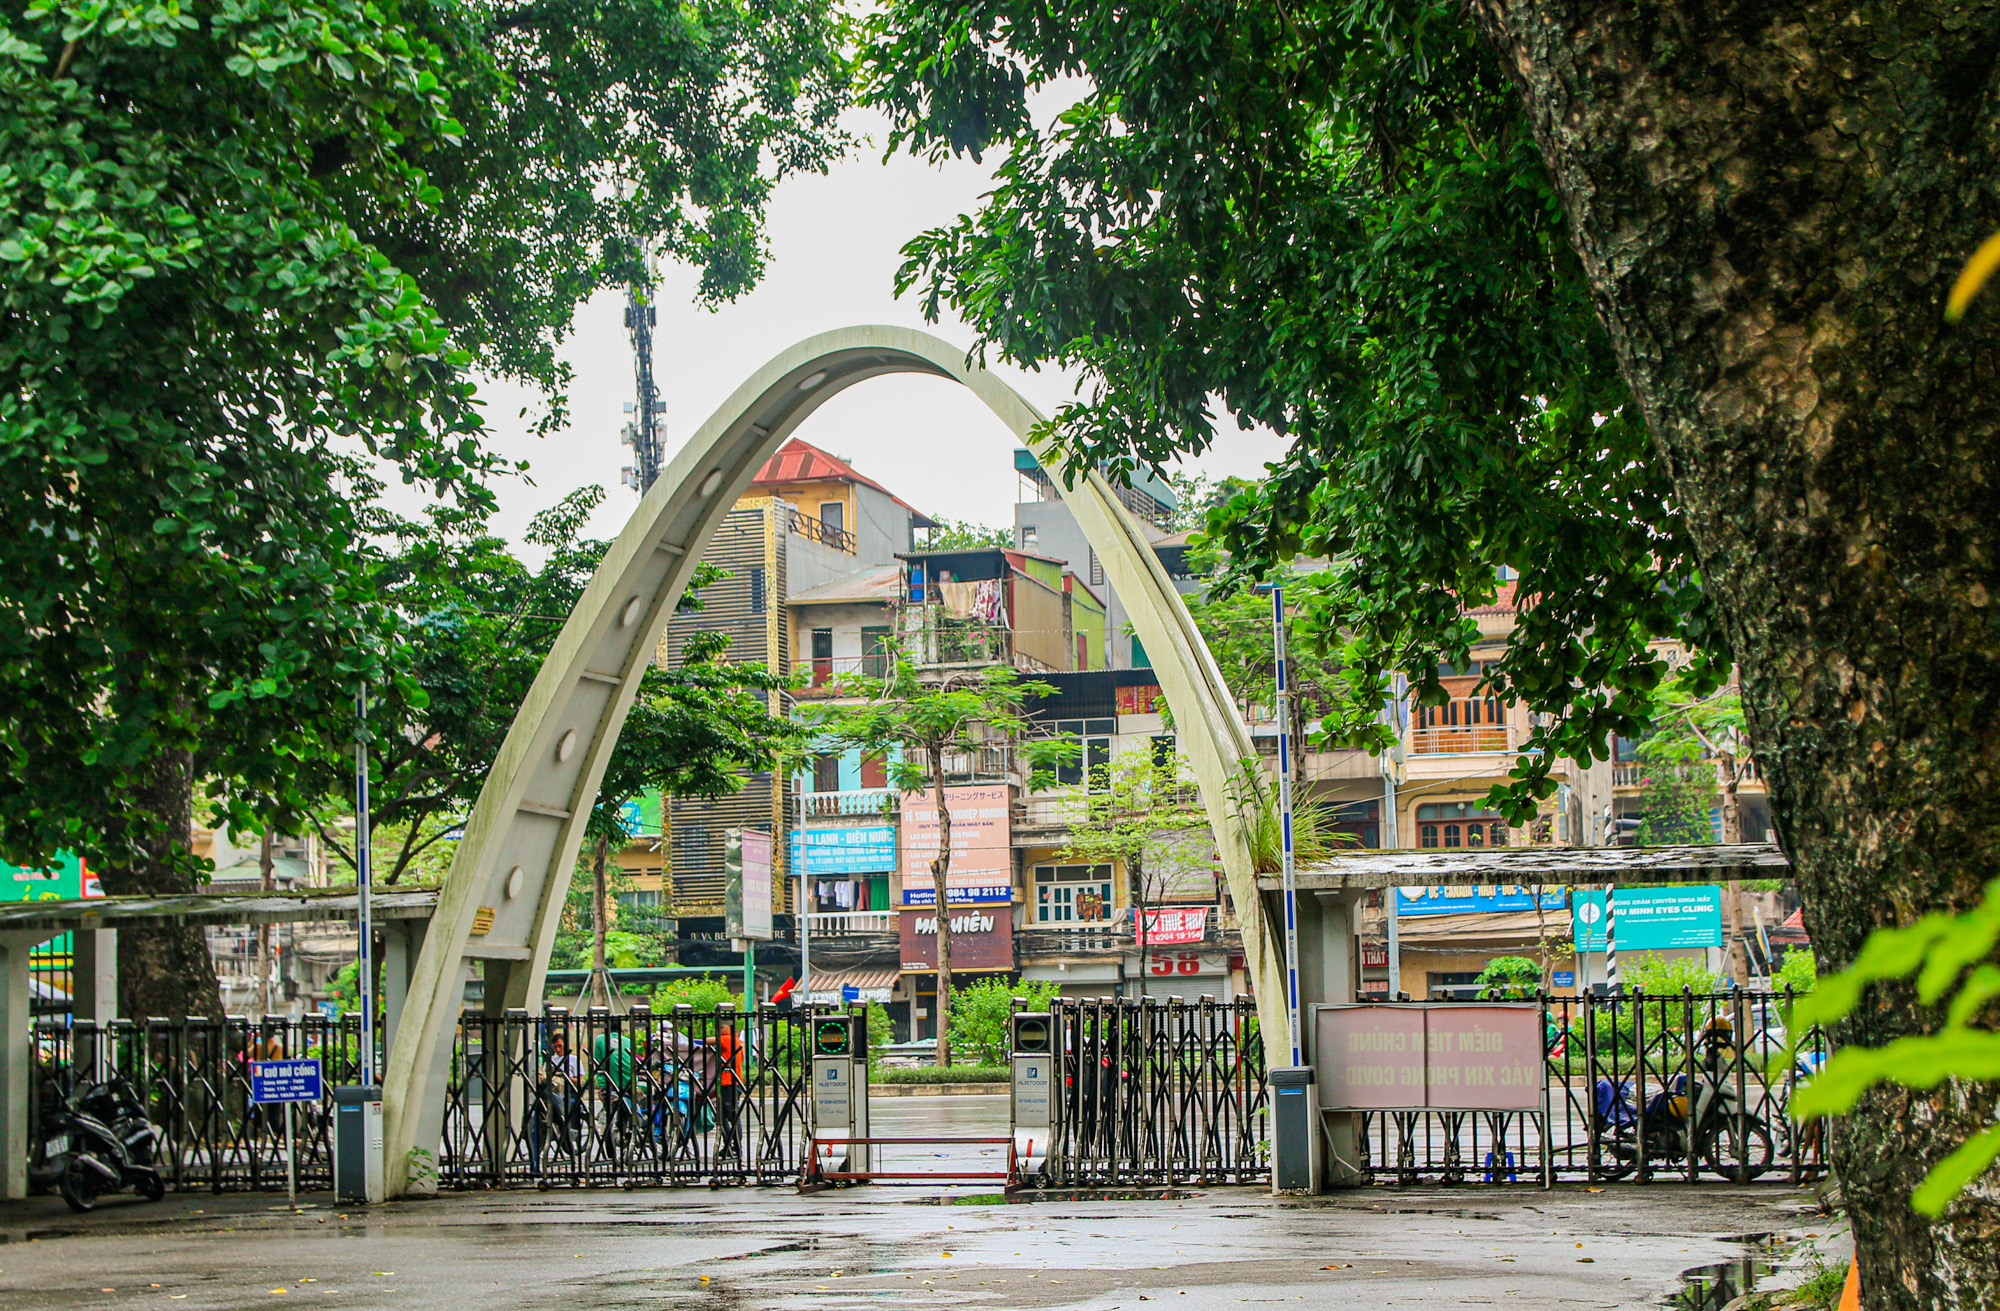 Đại học Bách Khoa Hà Nội là một trong những trường đại học hàng đầu tại Việt Nam, với truyền thống lâu đời và nhiều thành tựu đáng kể trong lĩnh vực kỹ thuật. Trường có môi trường học tập tiên tiến, cơ sở vật chất hiện đại và nhân lực giáo dục chất lượng cao. Học tập tại đây sẽ giúp bạn trở thành những chuyên gia hàng đầu trong ngành của mình.